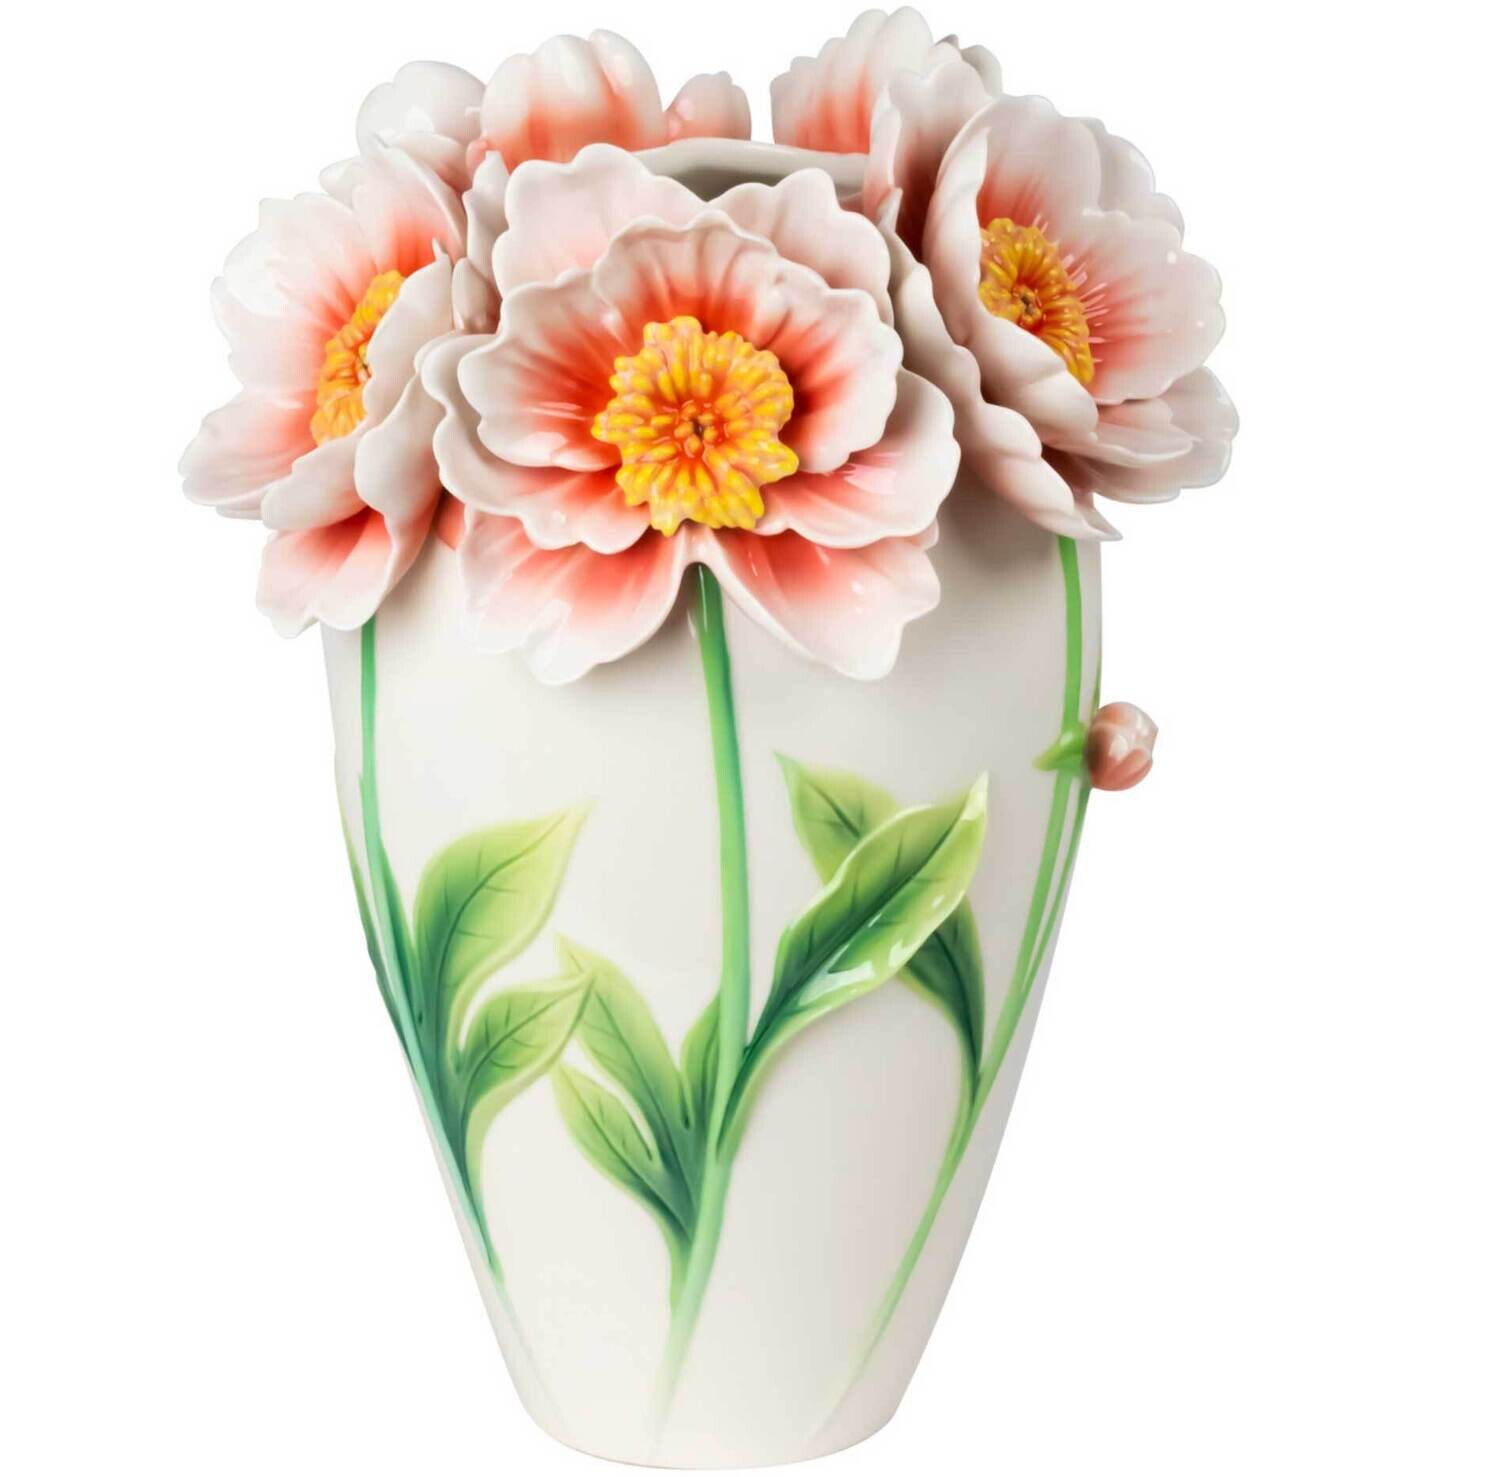 Franz Porcelain Like Minded Companionship Peony Design Sculptured Porcelain Vase FZ03965